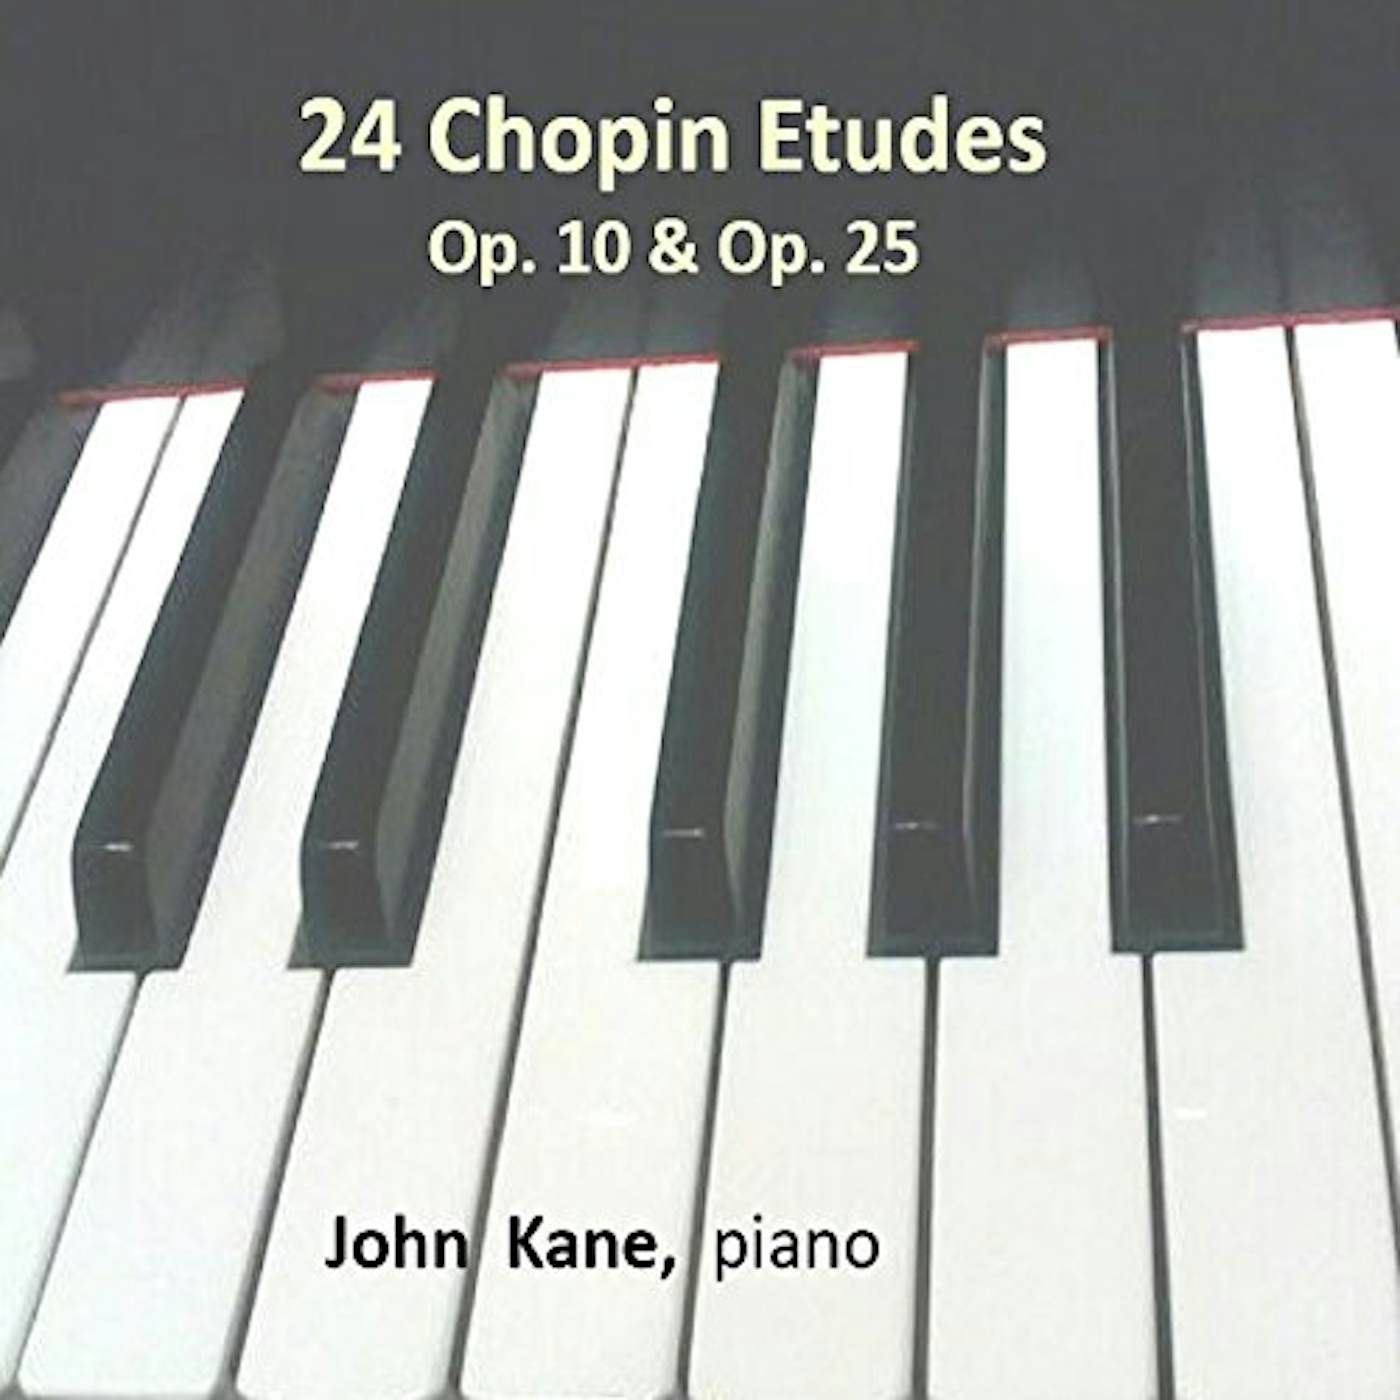 John Kane CHOPIN 24 ETUDES CD